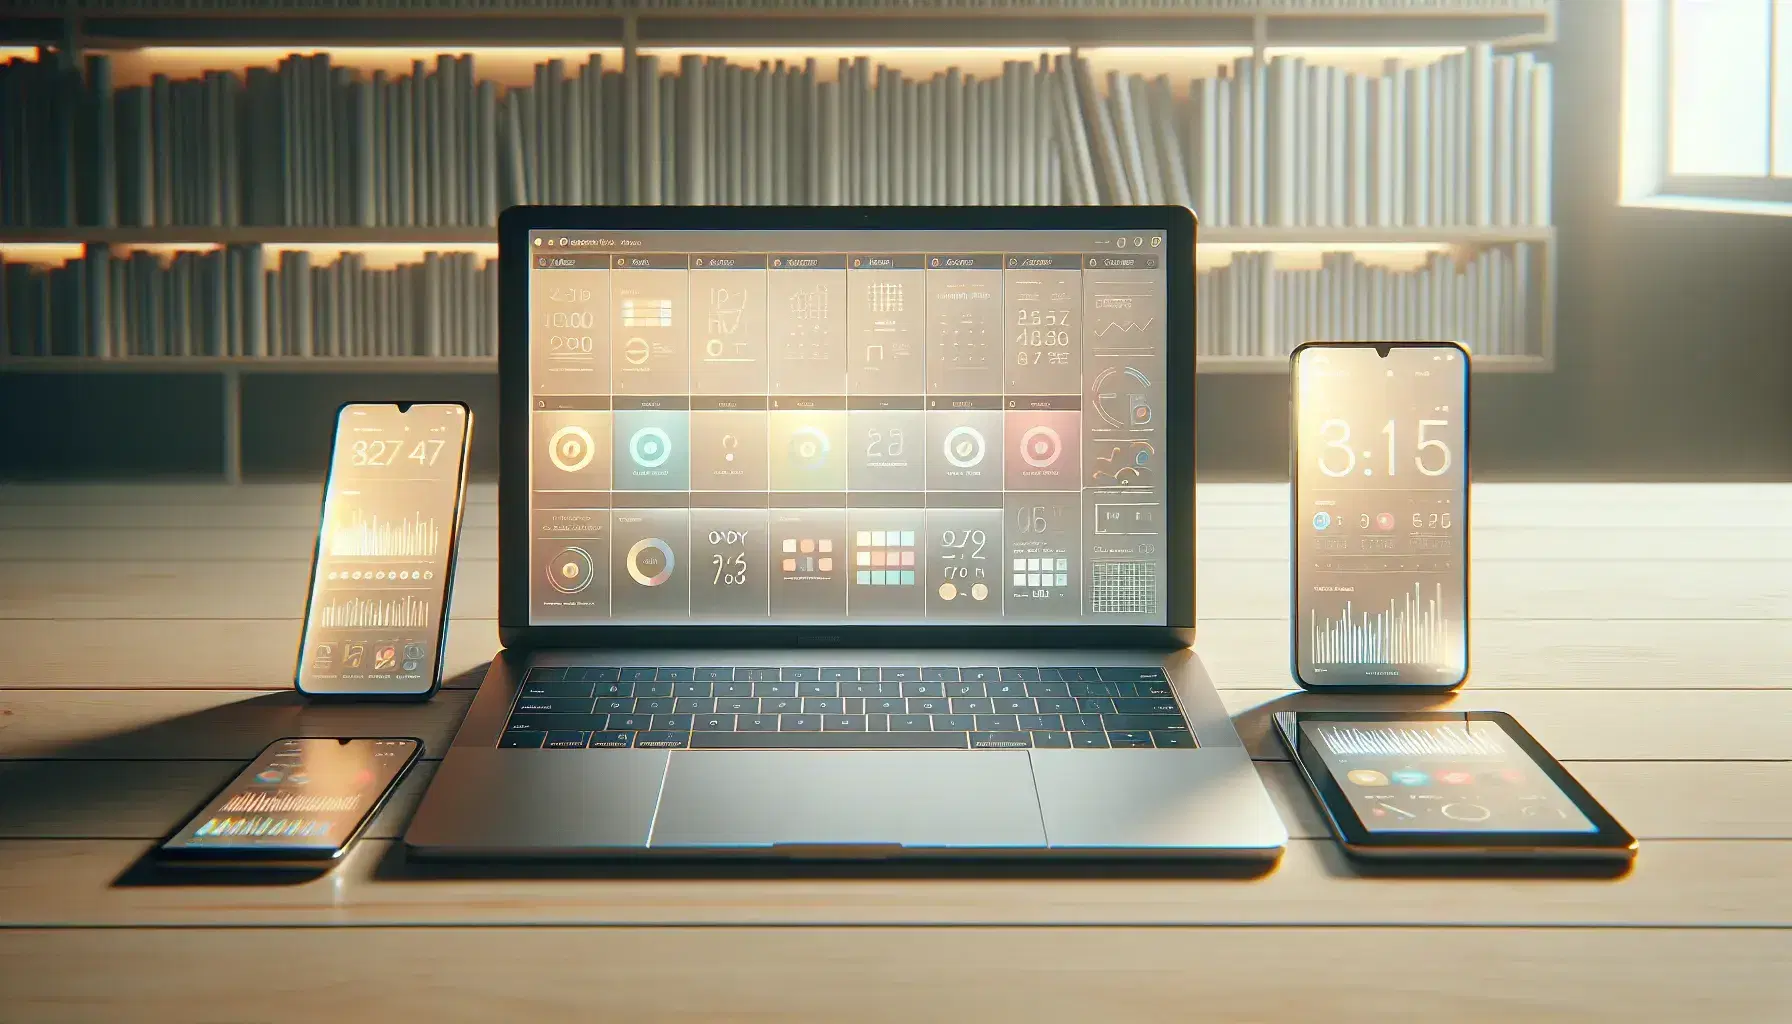 Mesa de madera clara con portátil abierto, smartphone y tablet mostrando interfaces gráficas y gráficos abstractos, fondo desenfocado con estantería de libros.